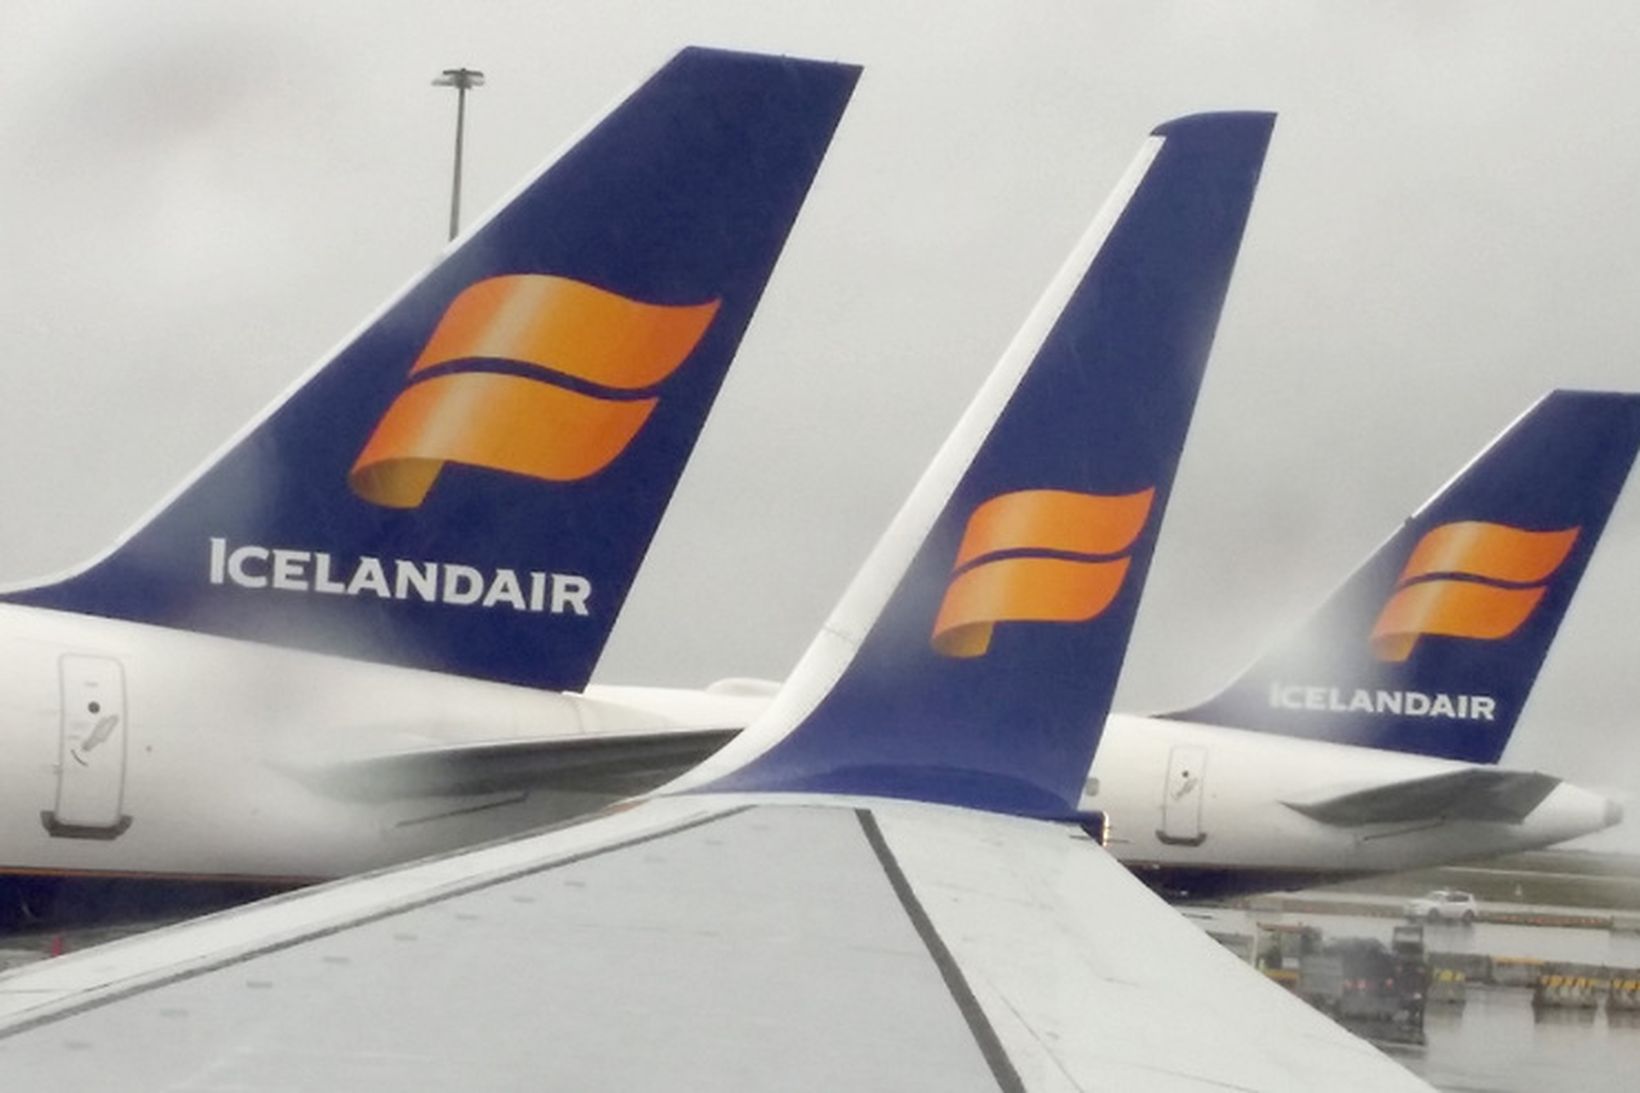 Farþegum Icelandair fjölgar ört.